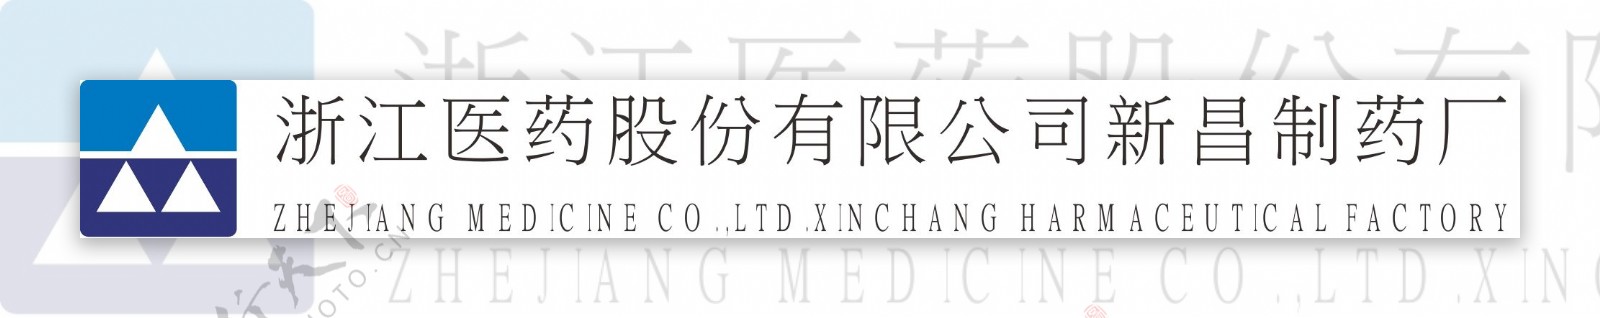 浙江医药logo图片